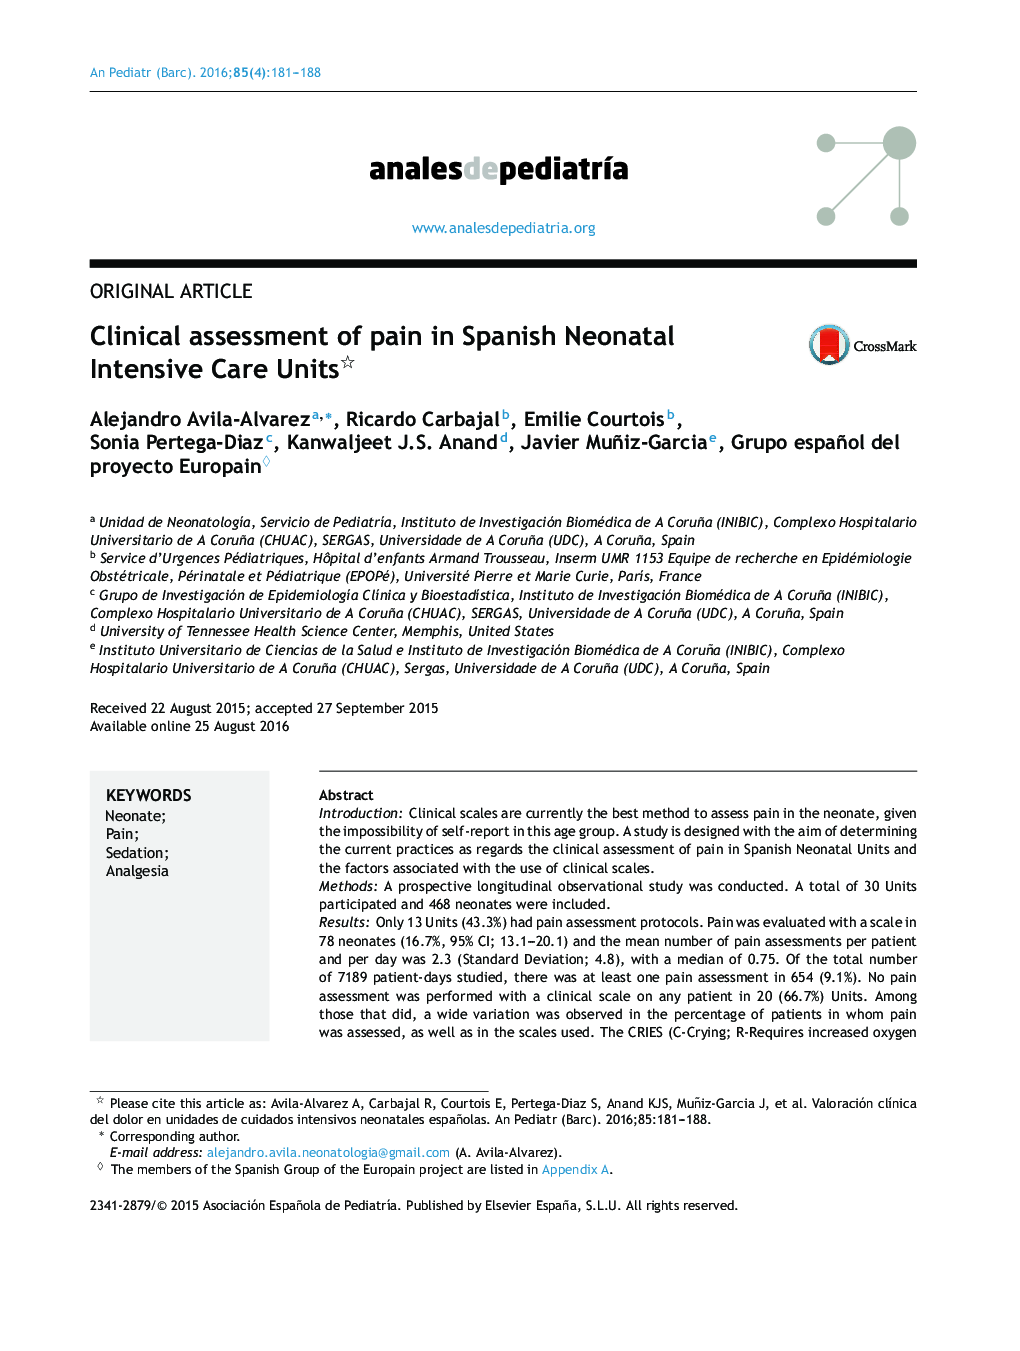 ارزیابی بالینی درد در بخش های مراقبت ویژه نوزادان اسپانیایی